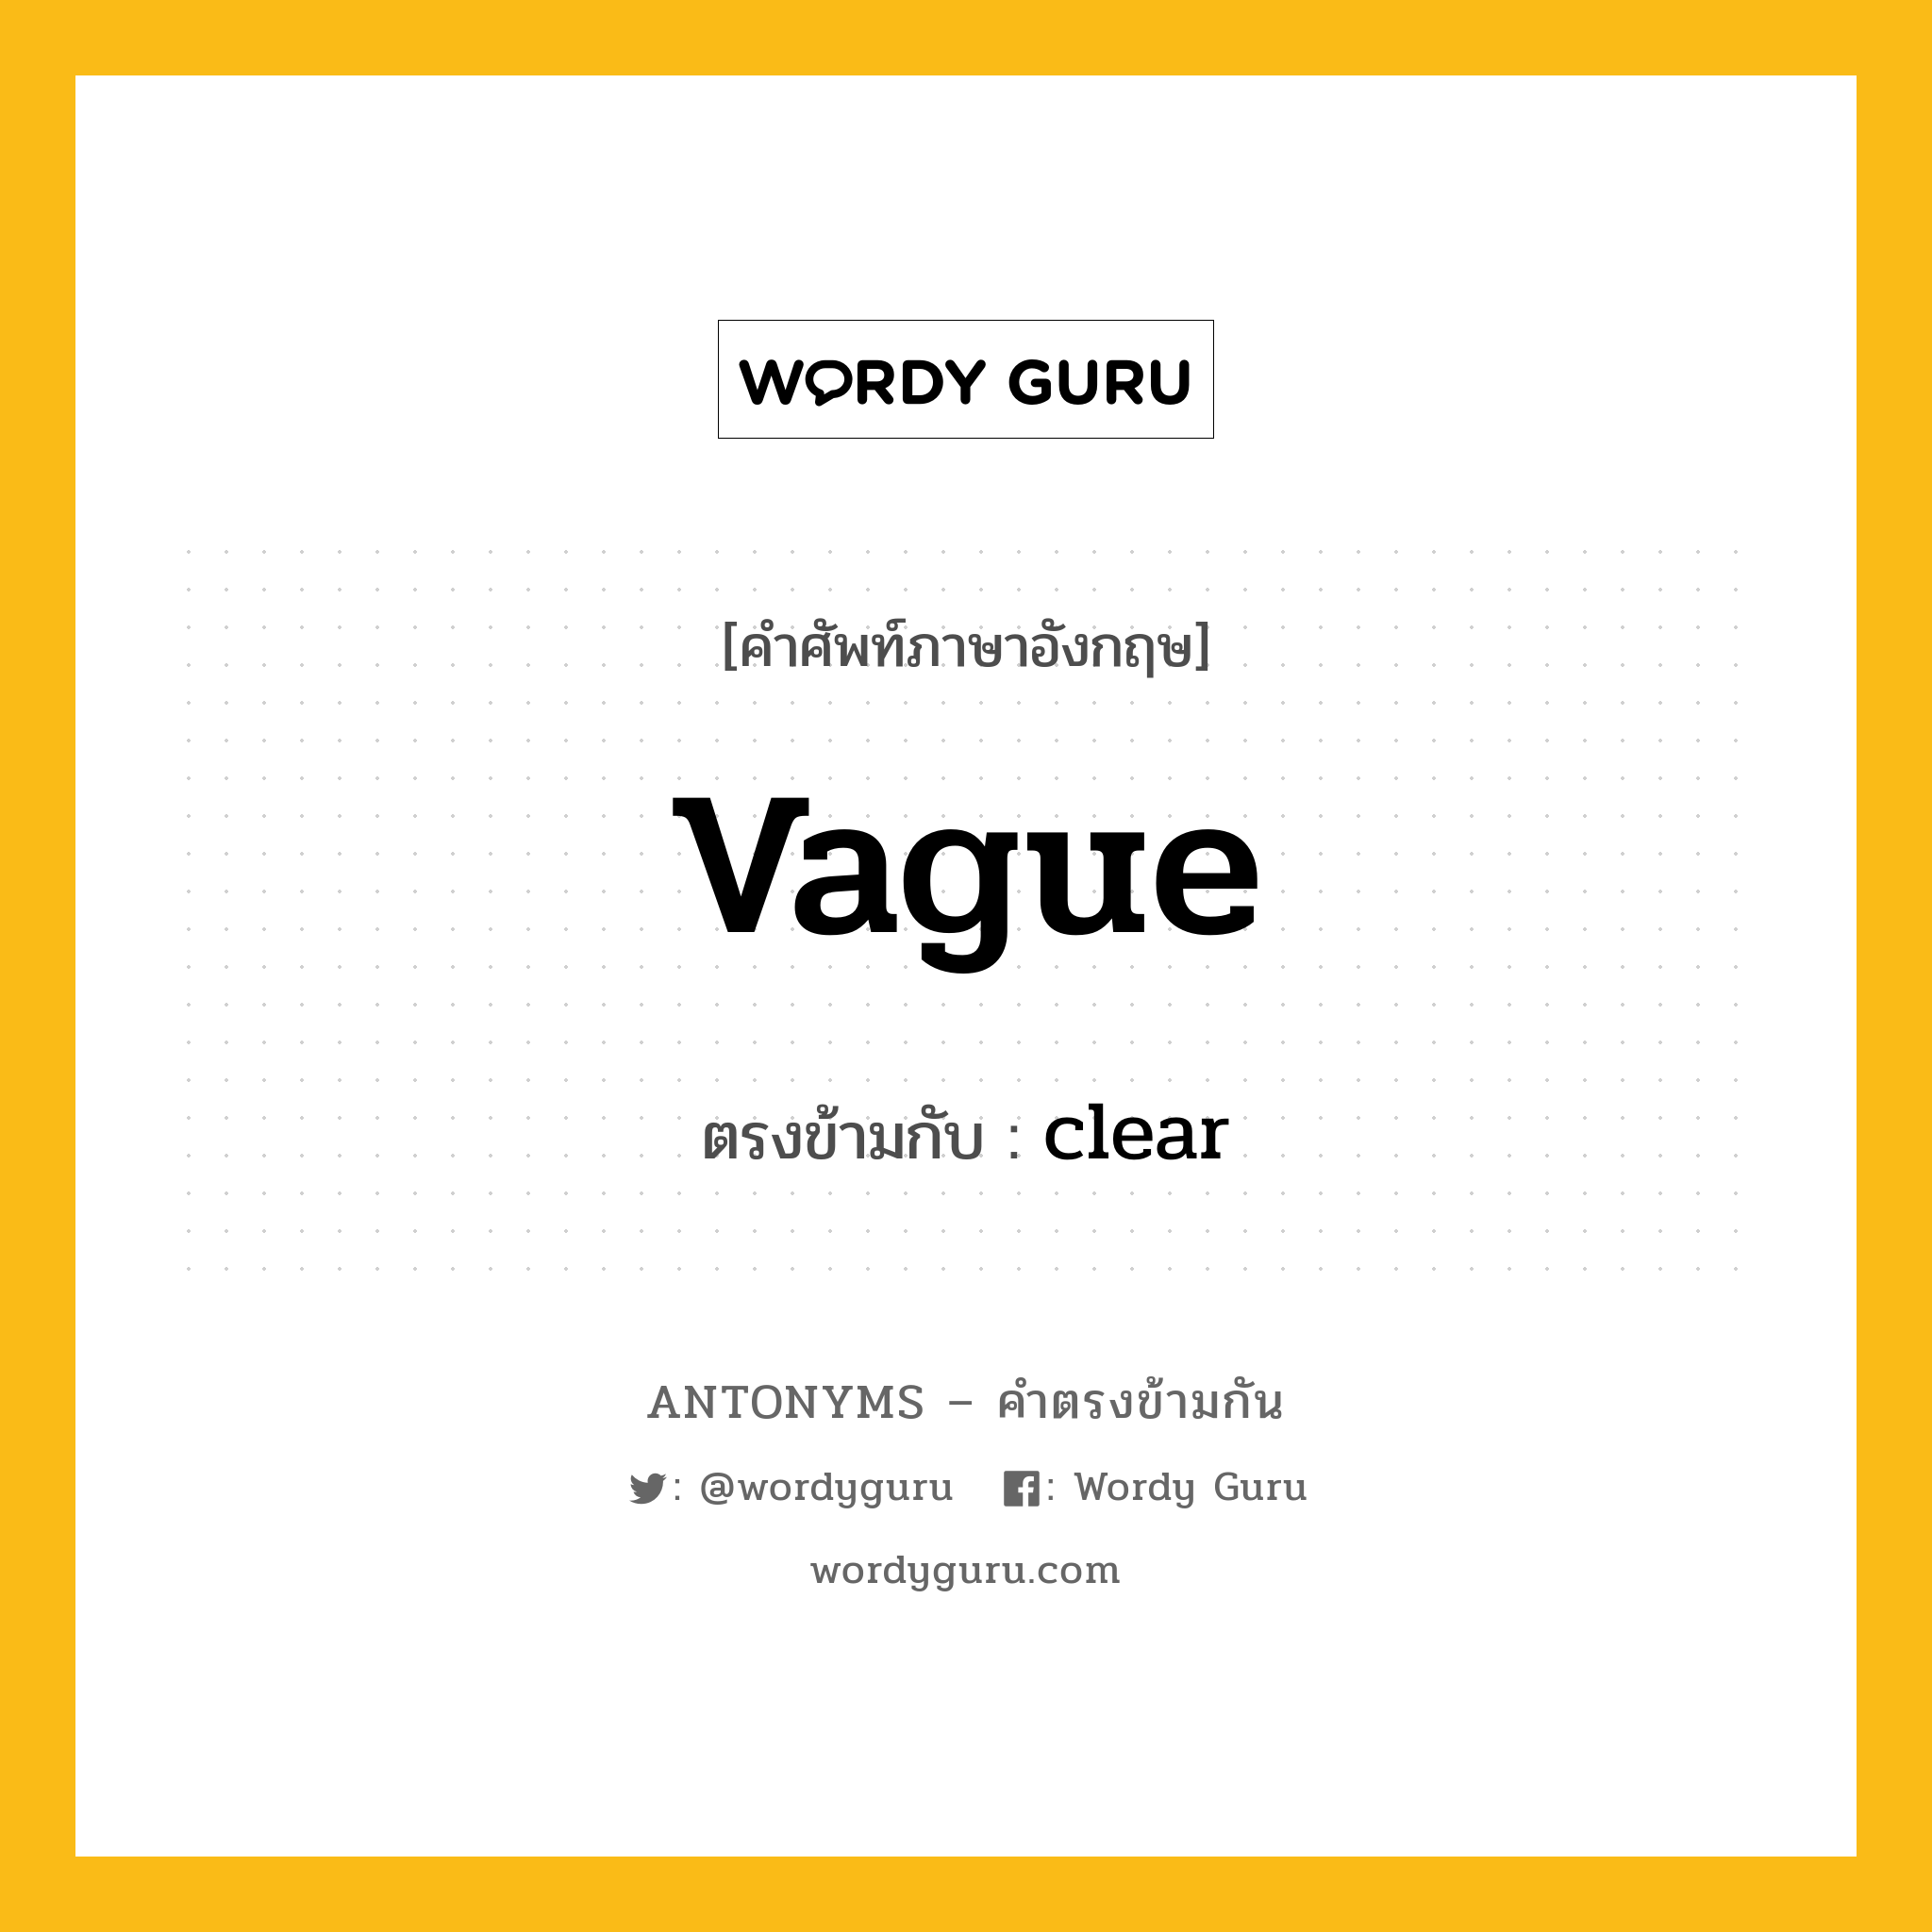 vague เป็นคำตรงข้ามกับคำไหนบ้าง?, คำศัพท์ภาษาอังกฤษ vague ตรงข้ามกับ clear หมวด clear